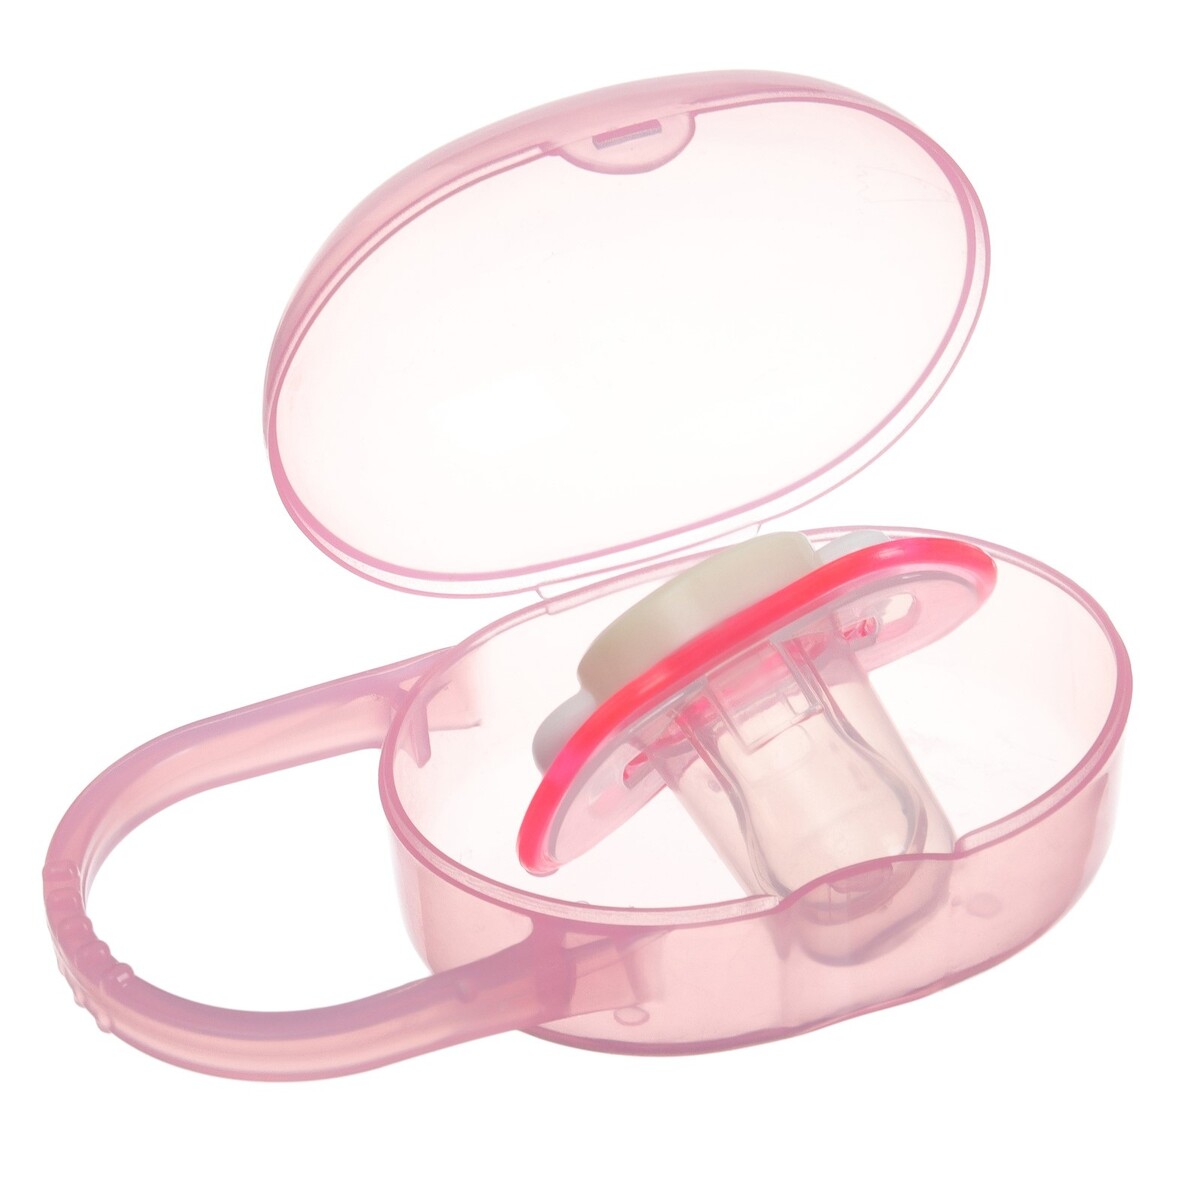 Соска - пустышка ортодонтическая с контейнером, +3мес., цвет розовый соска пустышка классическая латекс 3мес для девочки